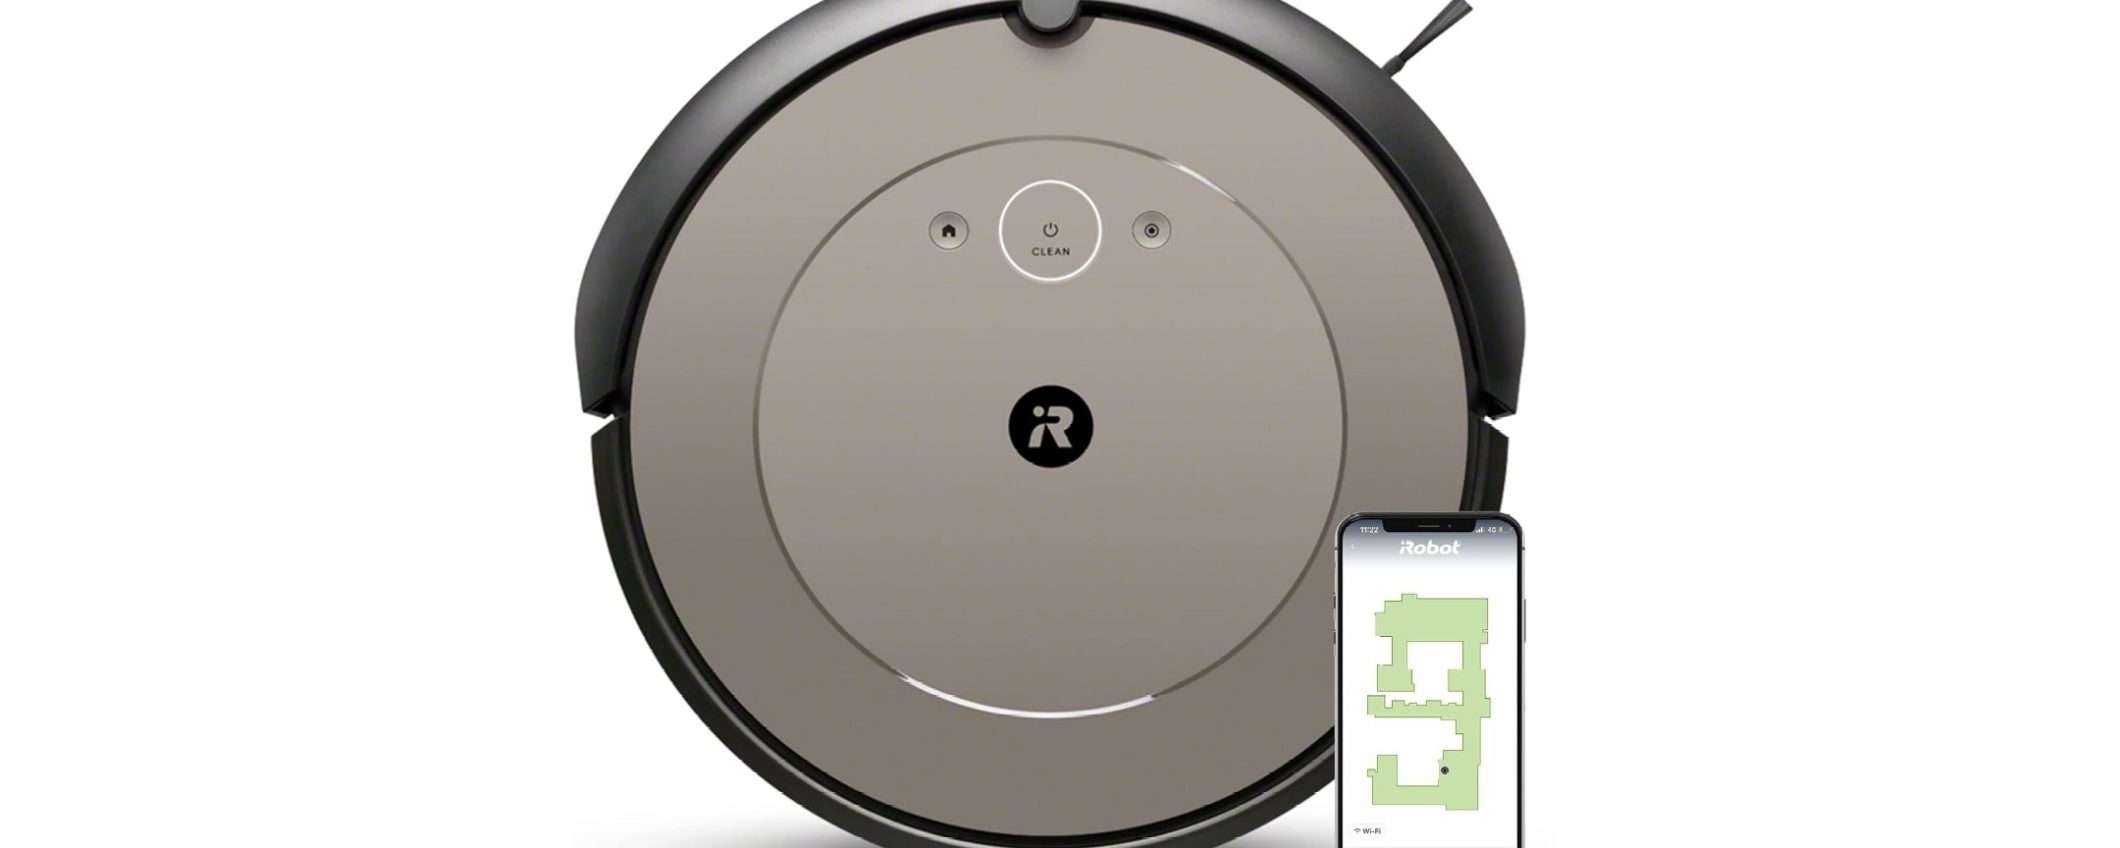 Questo robot aspirapolvere iRobot Roomba è disponibile su Amazon a meno di 300 euro!